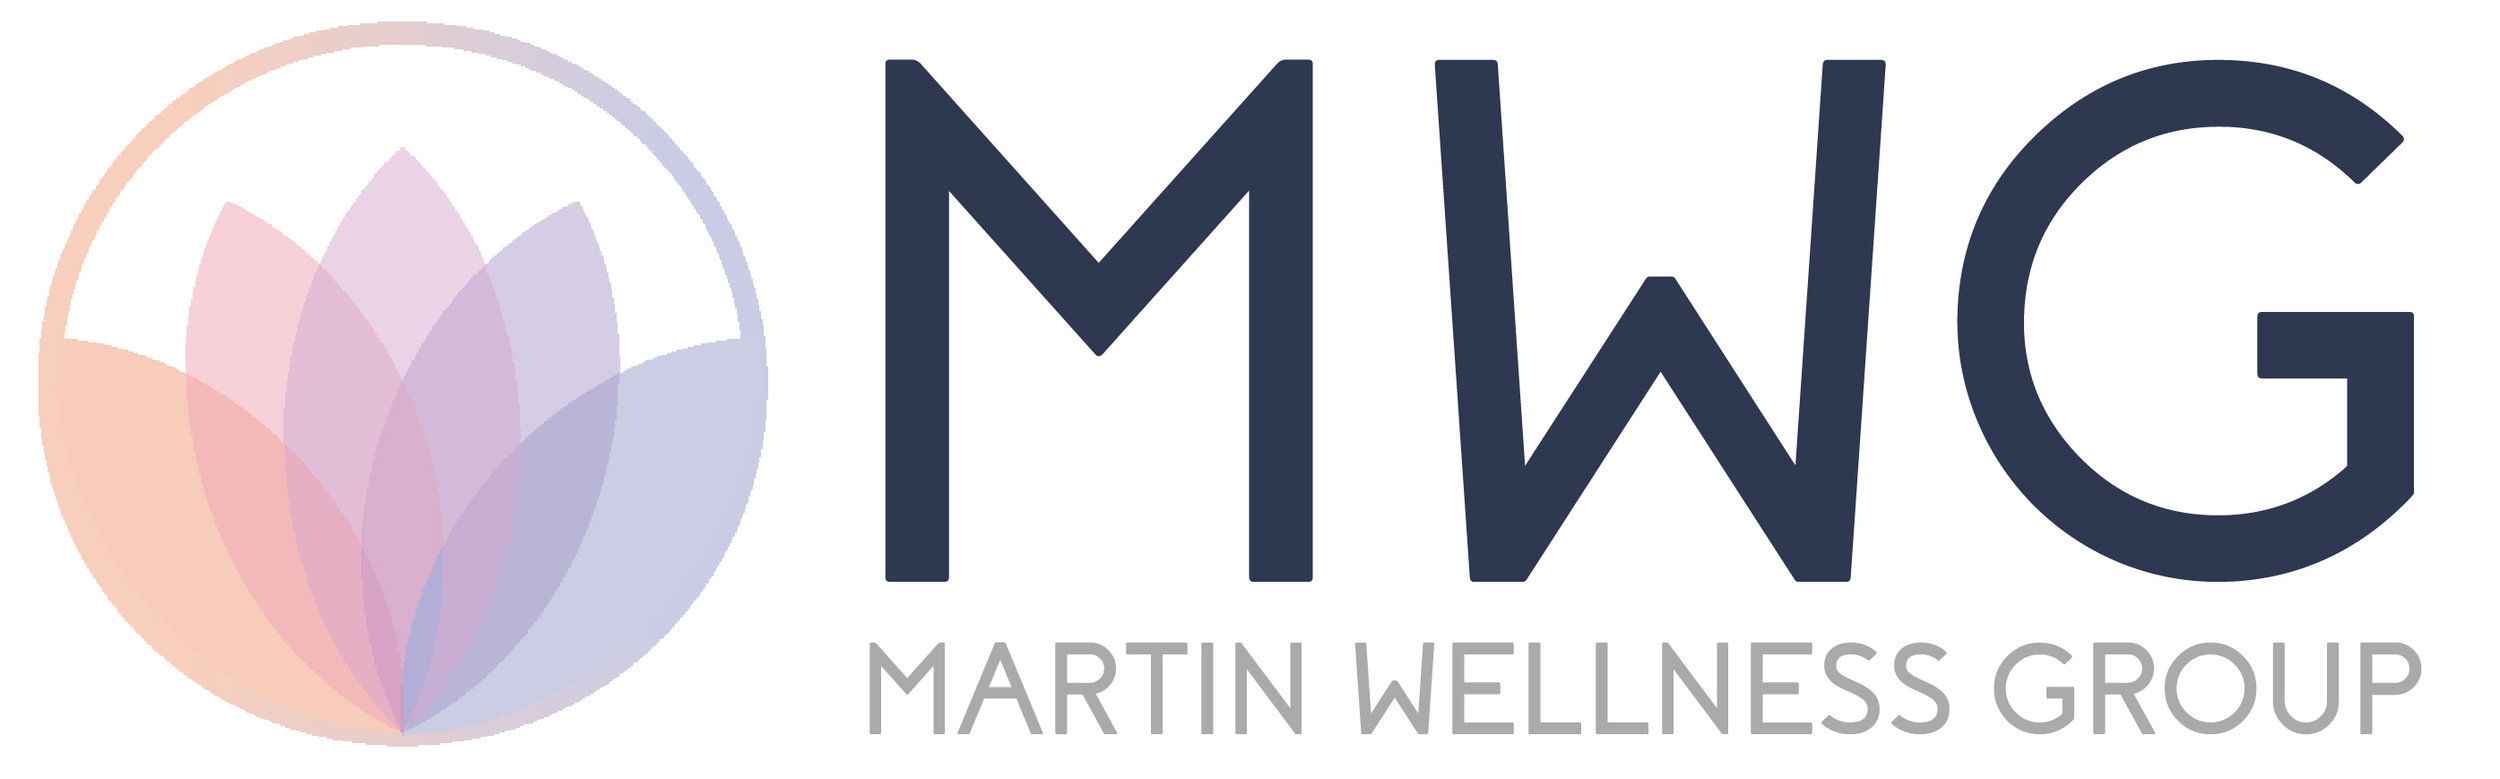 Martin Wellness Group